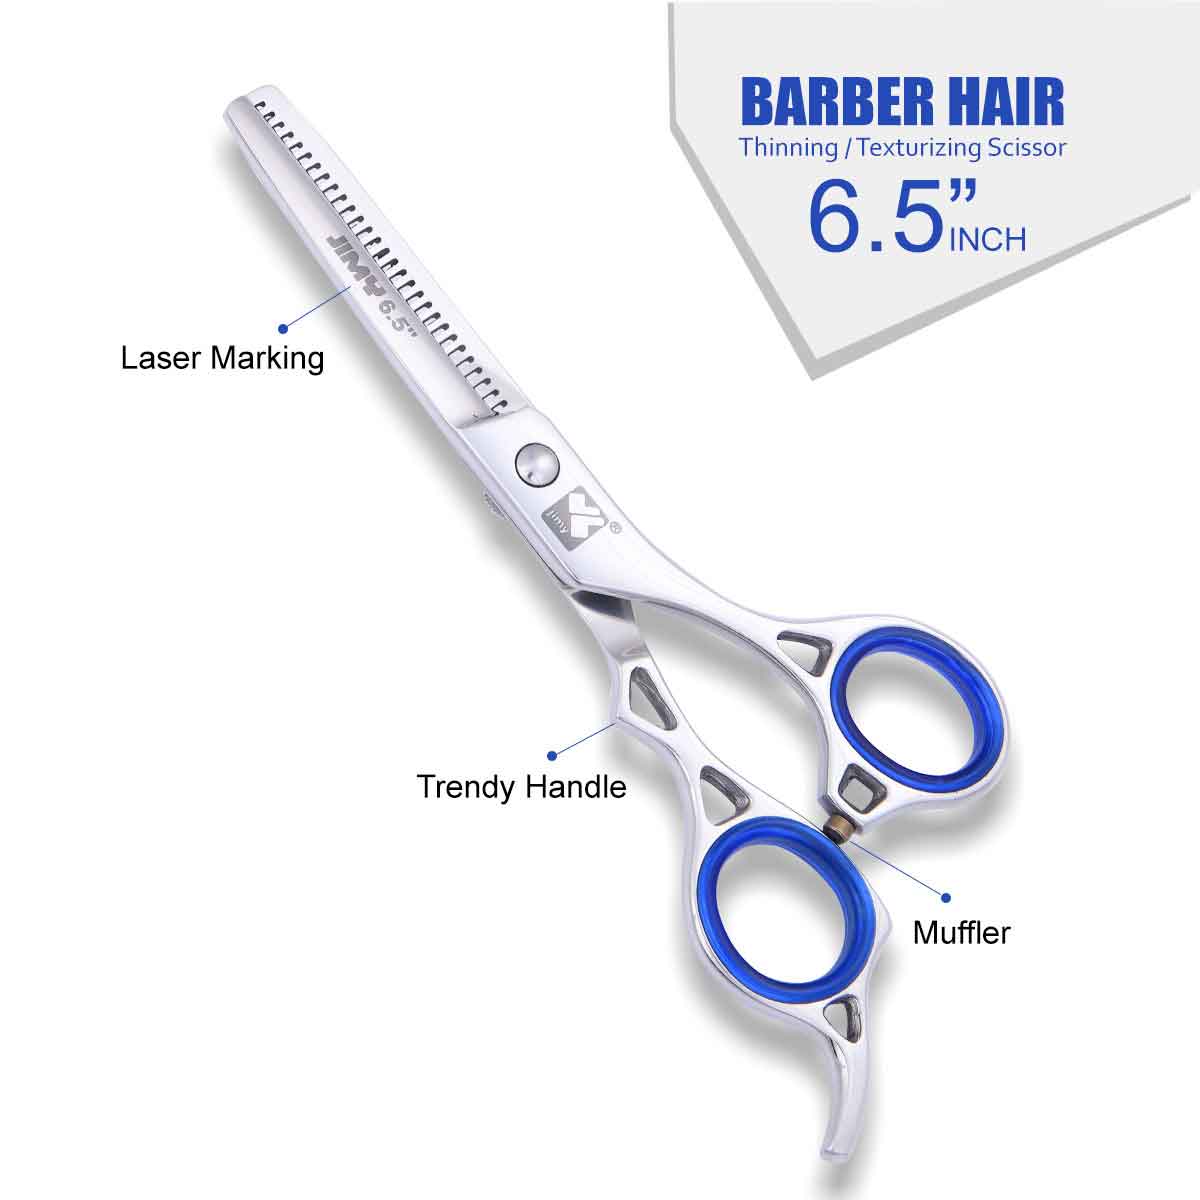 Barber Hairdressing Thinning Scissor & Shear 6.5